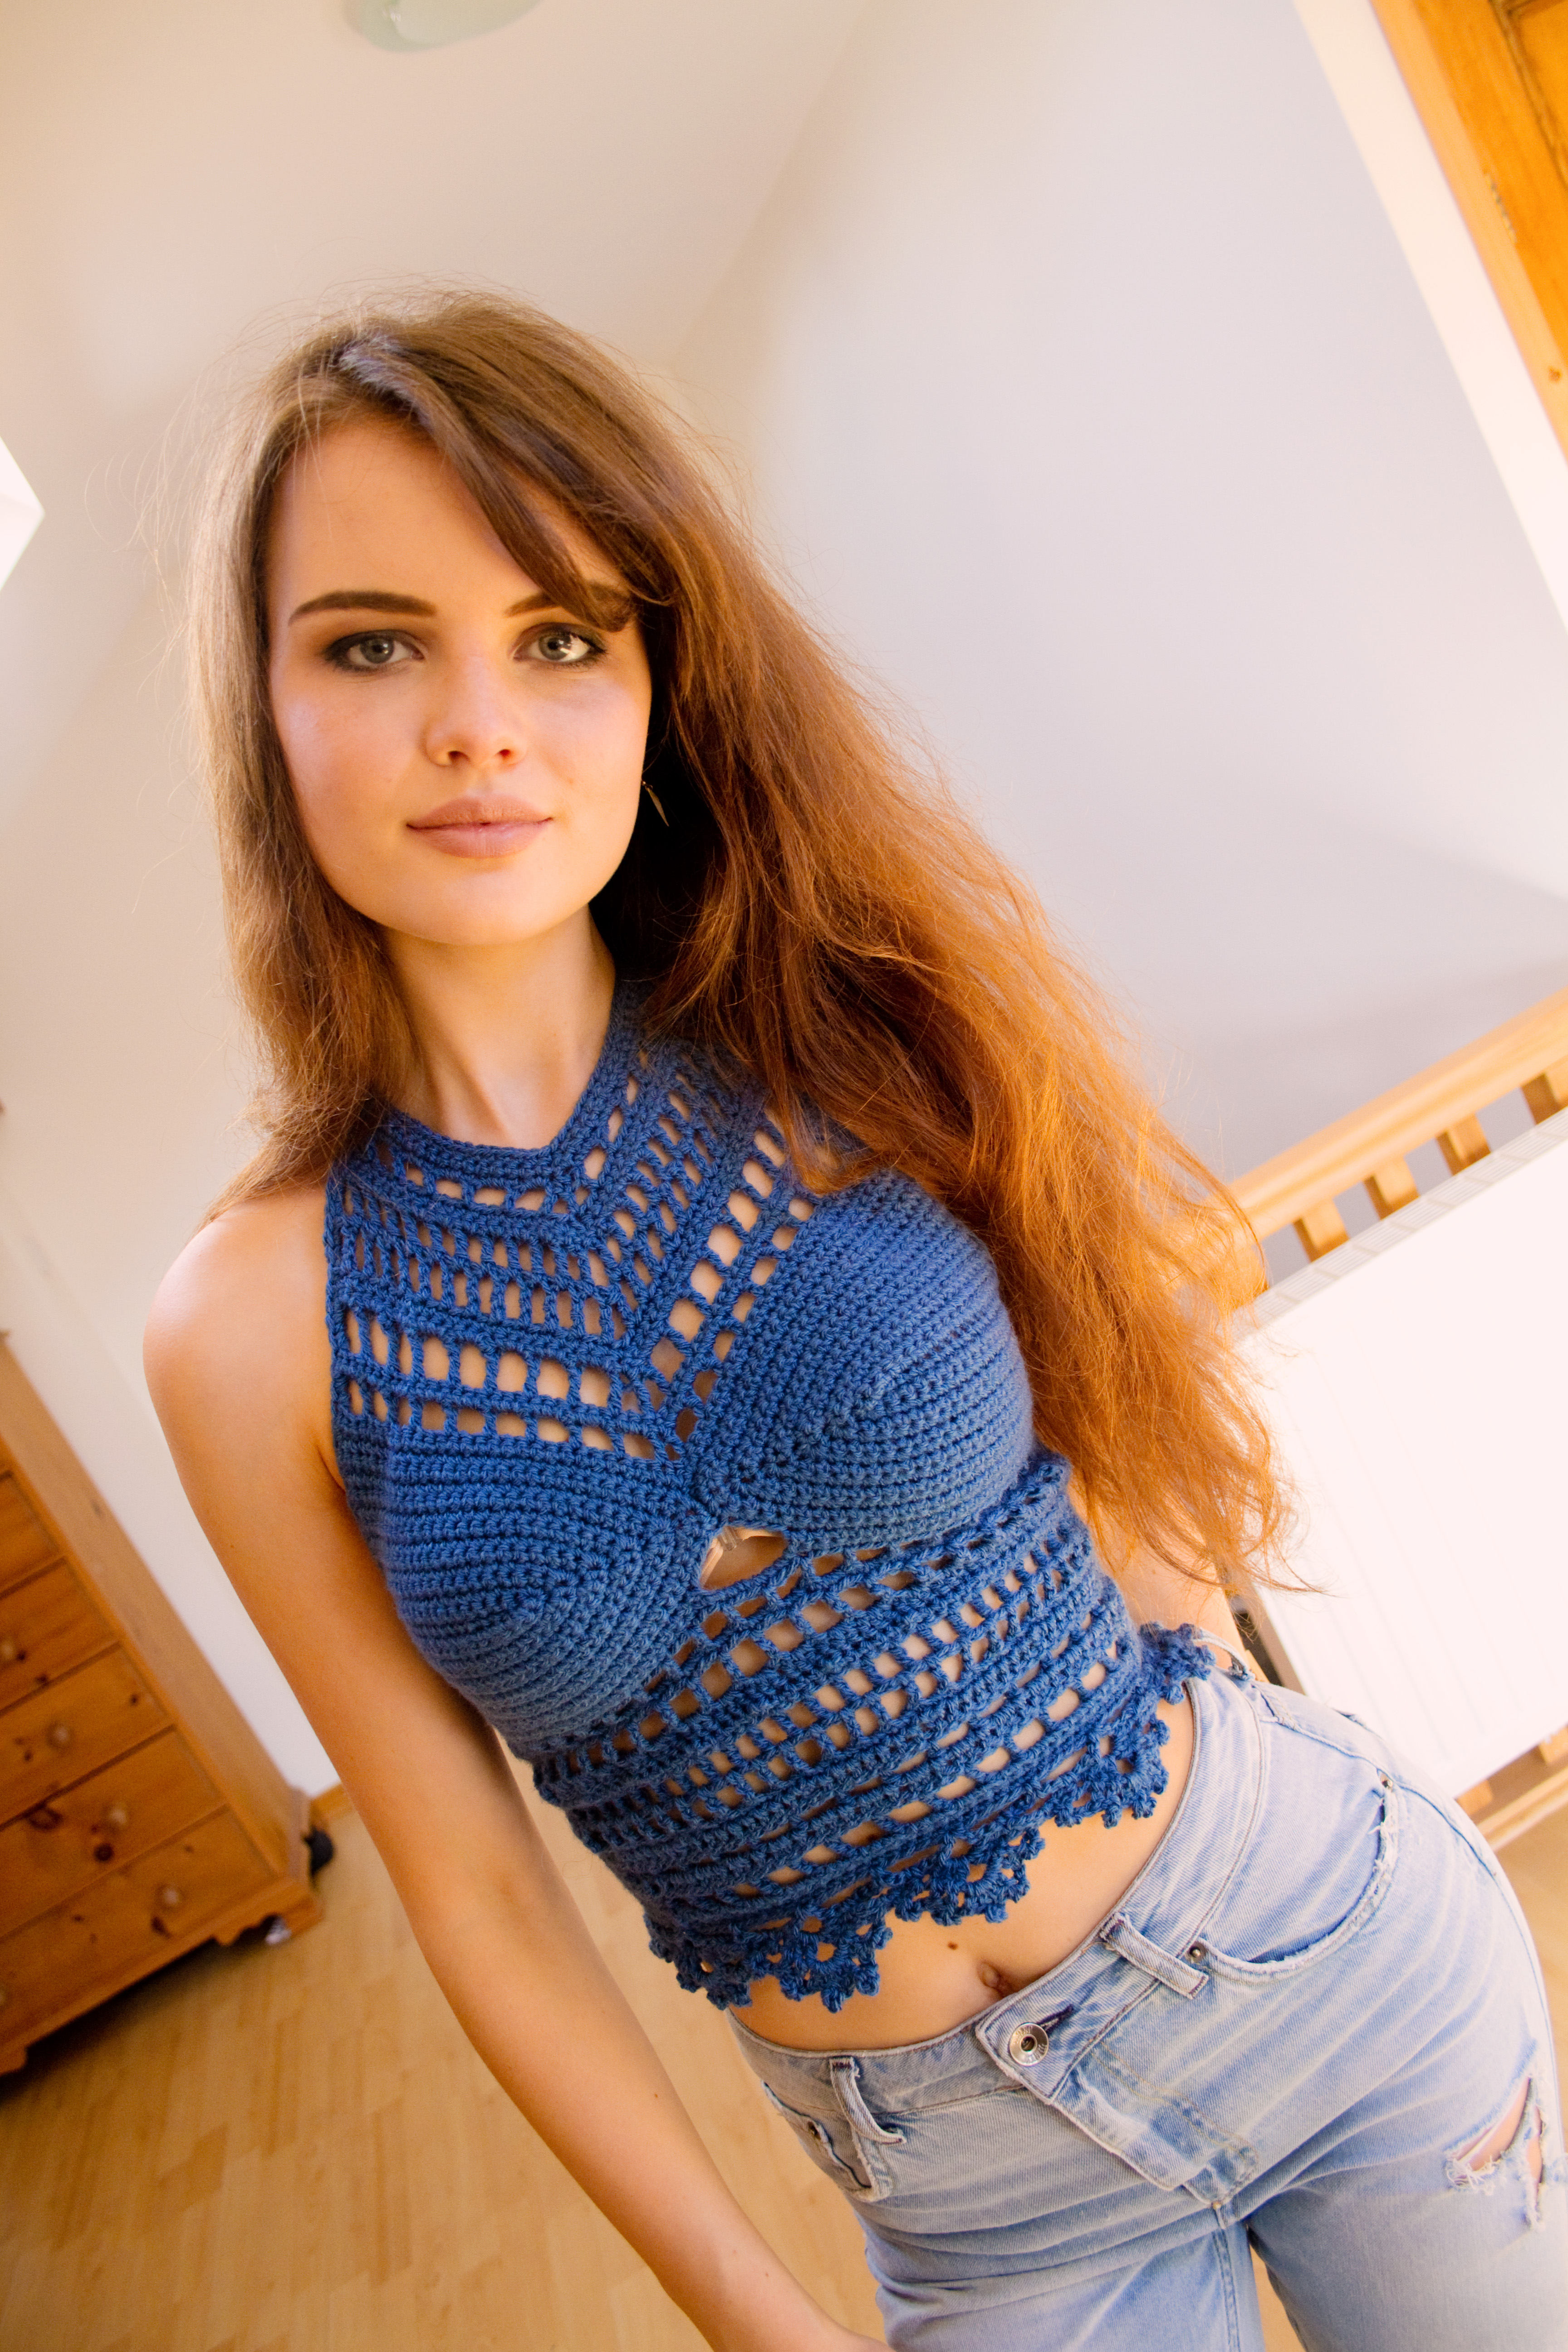 Teen blogger wearing her handmade crochet halter top